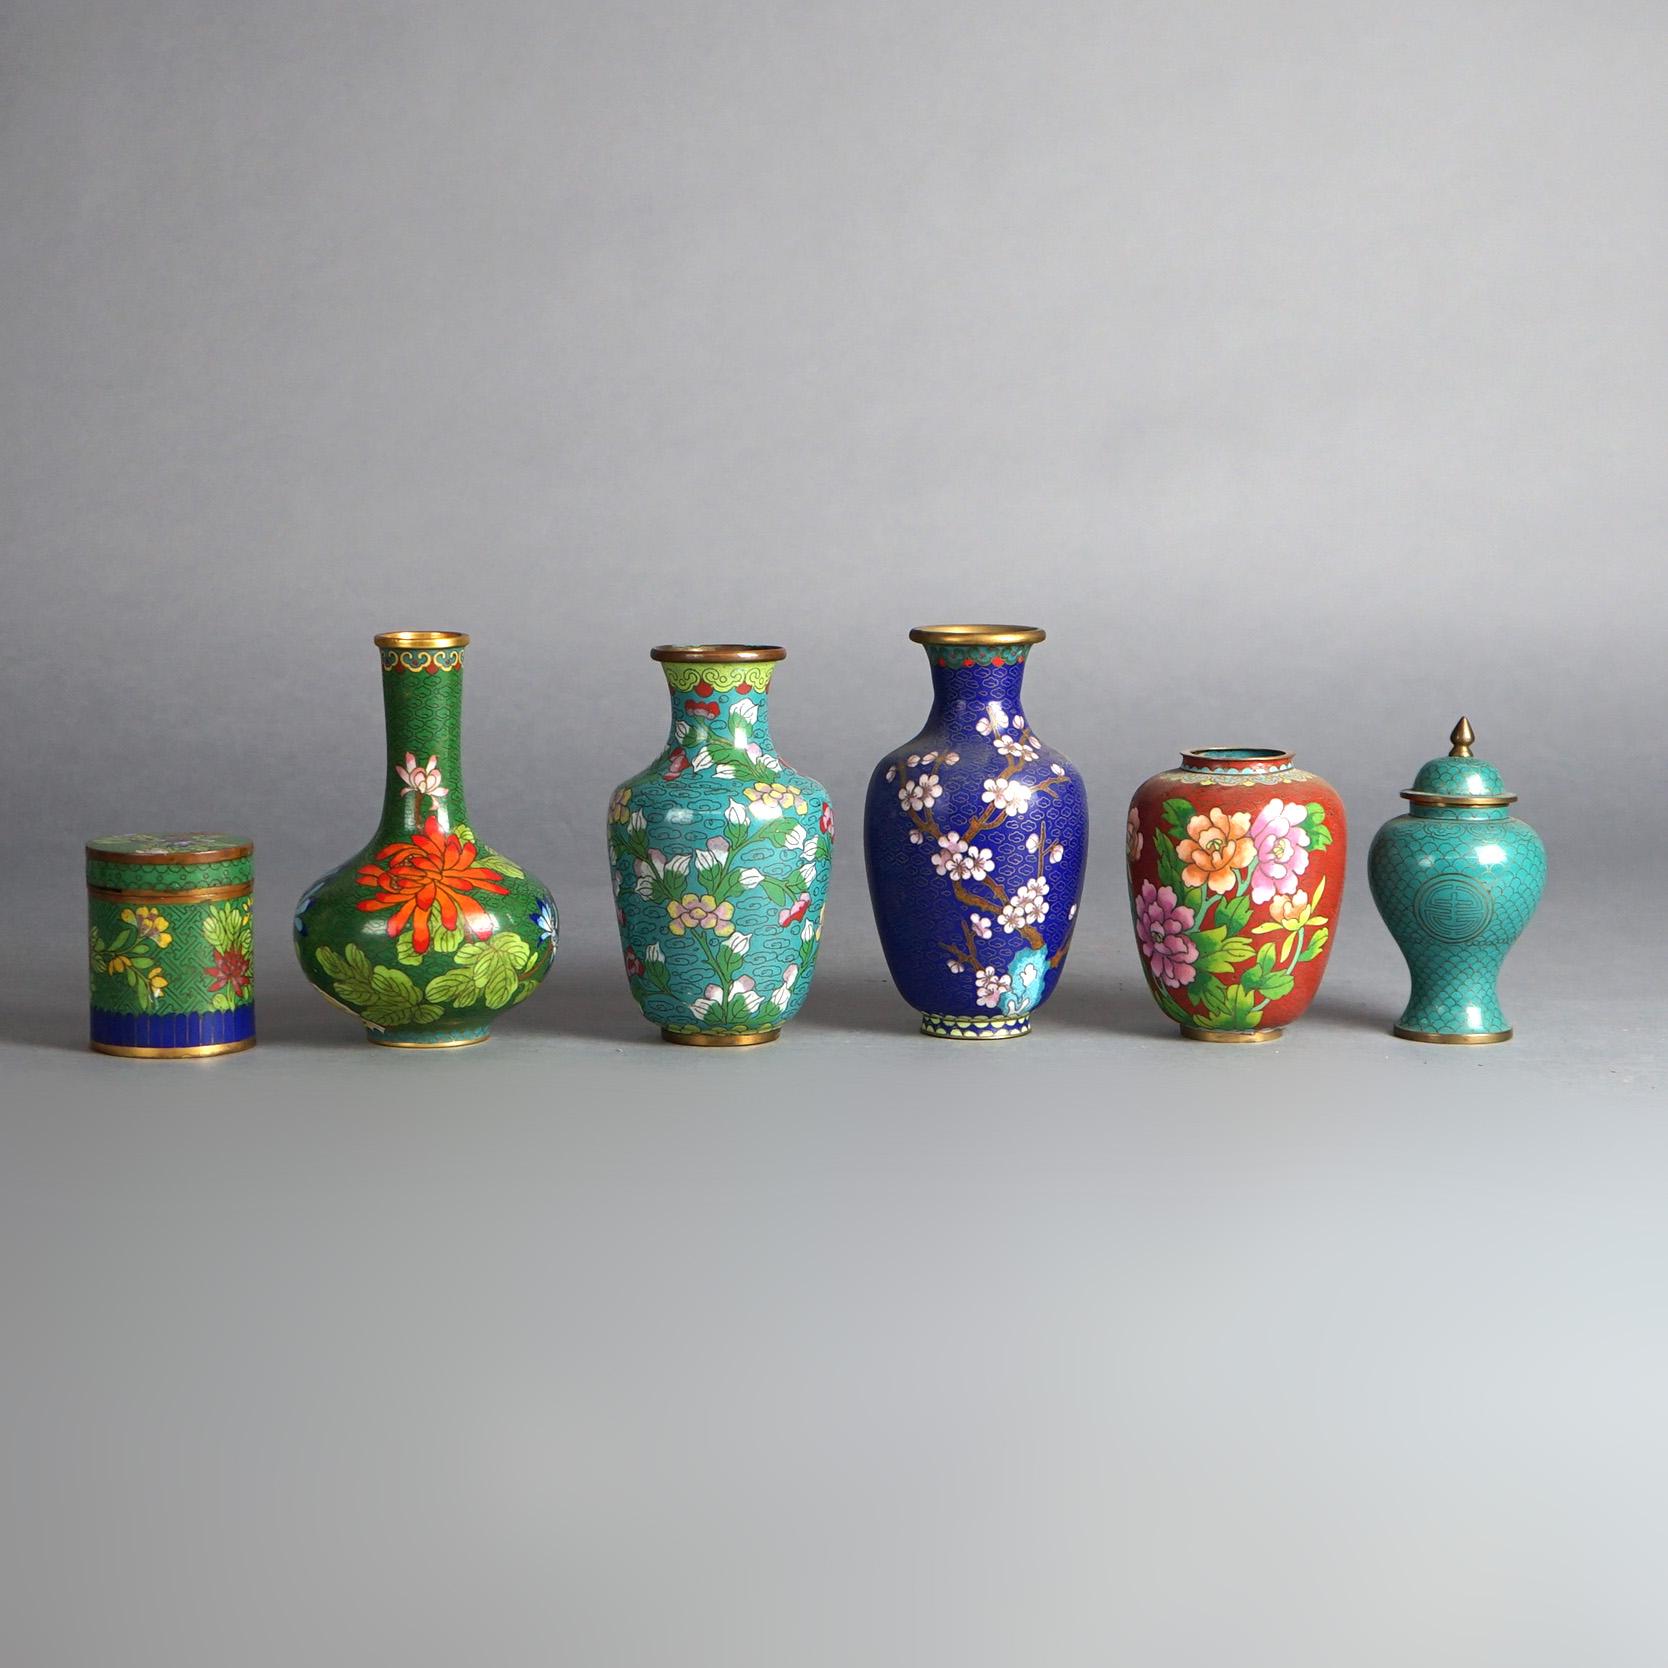 Six objets miniatures anciens japonais Meiji émaillés cloisonnés comprenant des vases à fleurs, des urnes et une jarre couverte C1920

Mesures - Bocal vert : 3''H x 2.5''L x 2.5''D ; Vert Turquoise : 4.75''H x 2.75''L x 2.75''D ; Rouge/Brun Avec